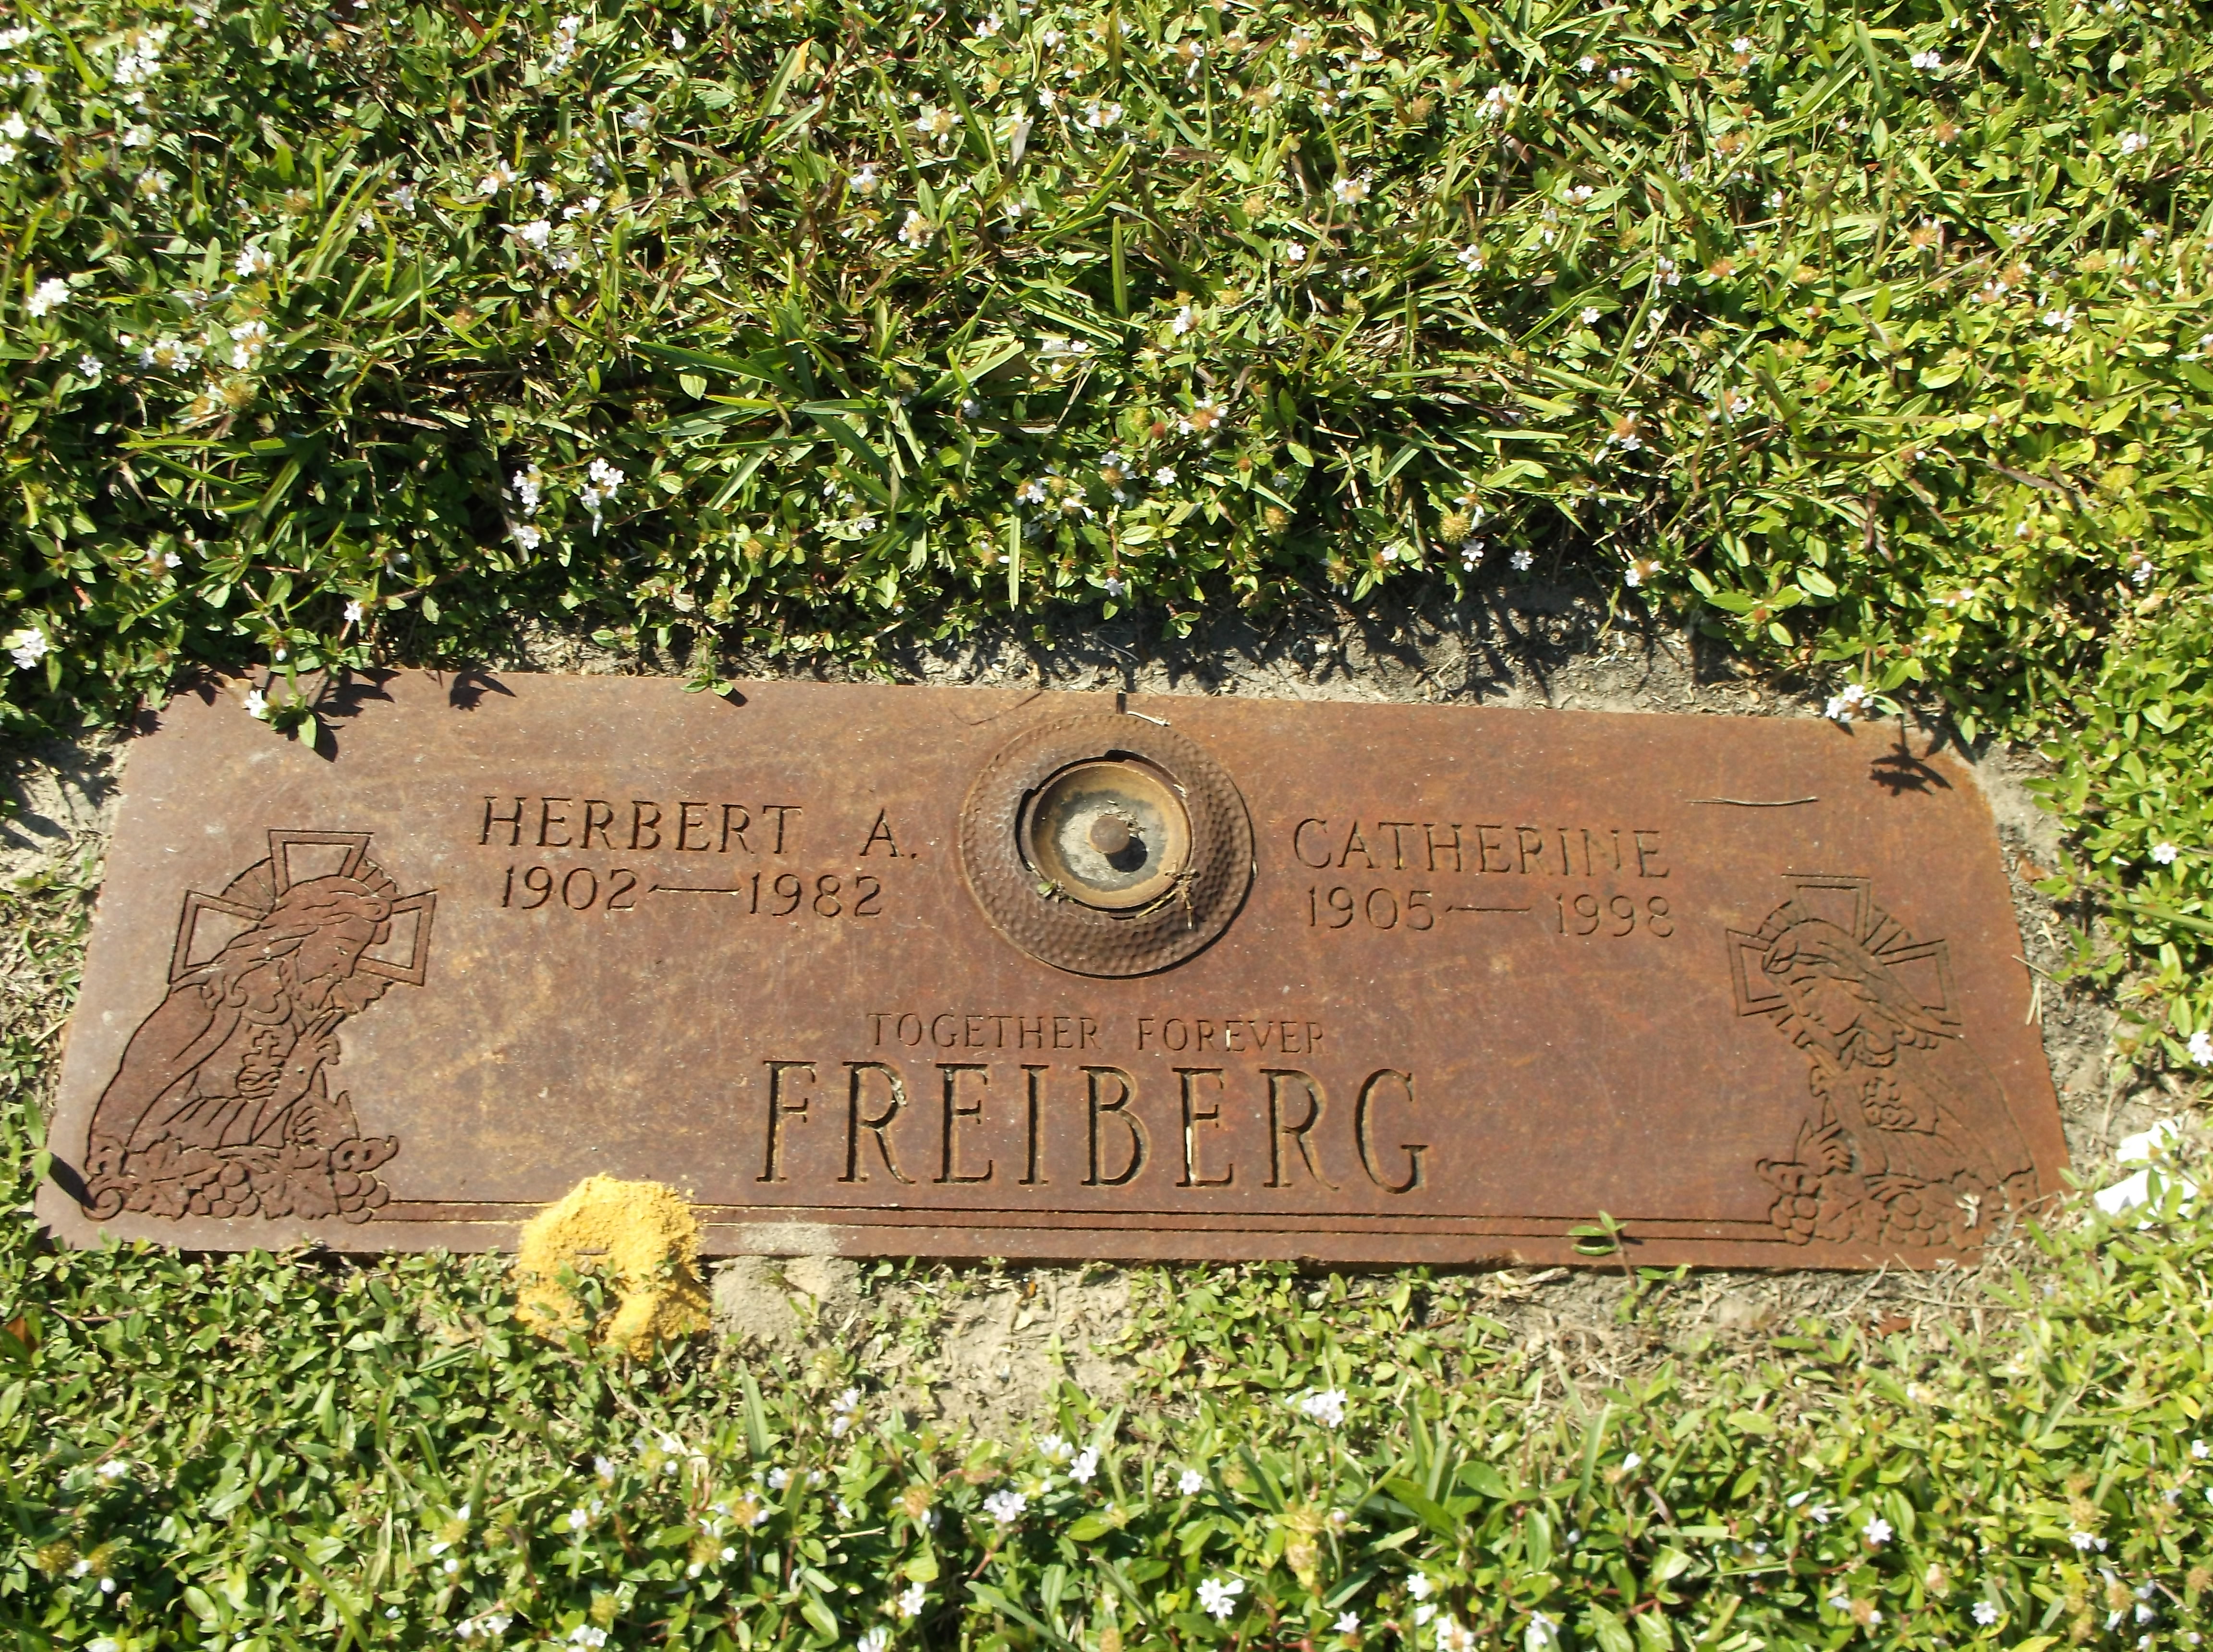 Catherine Freiberg